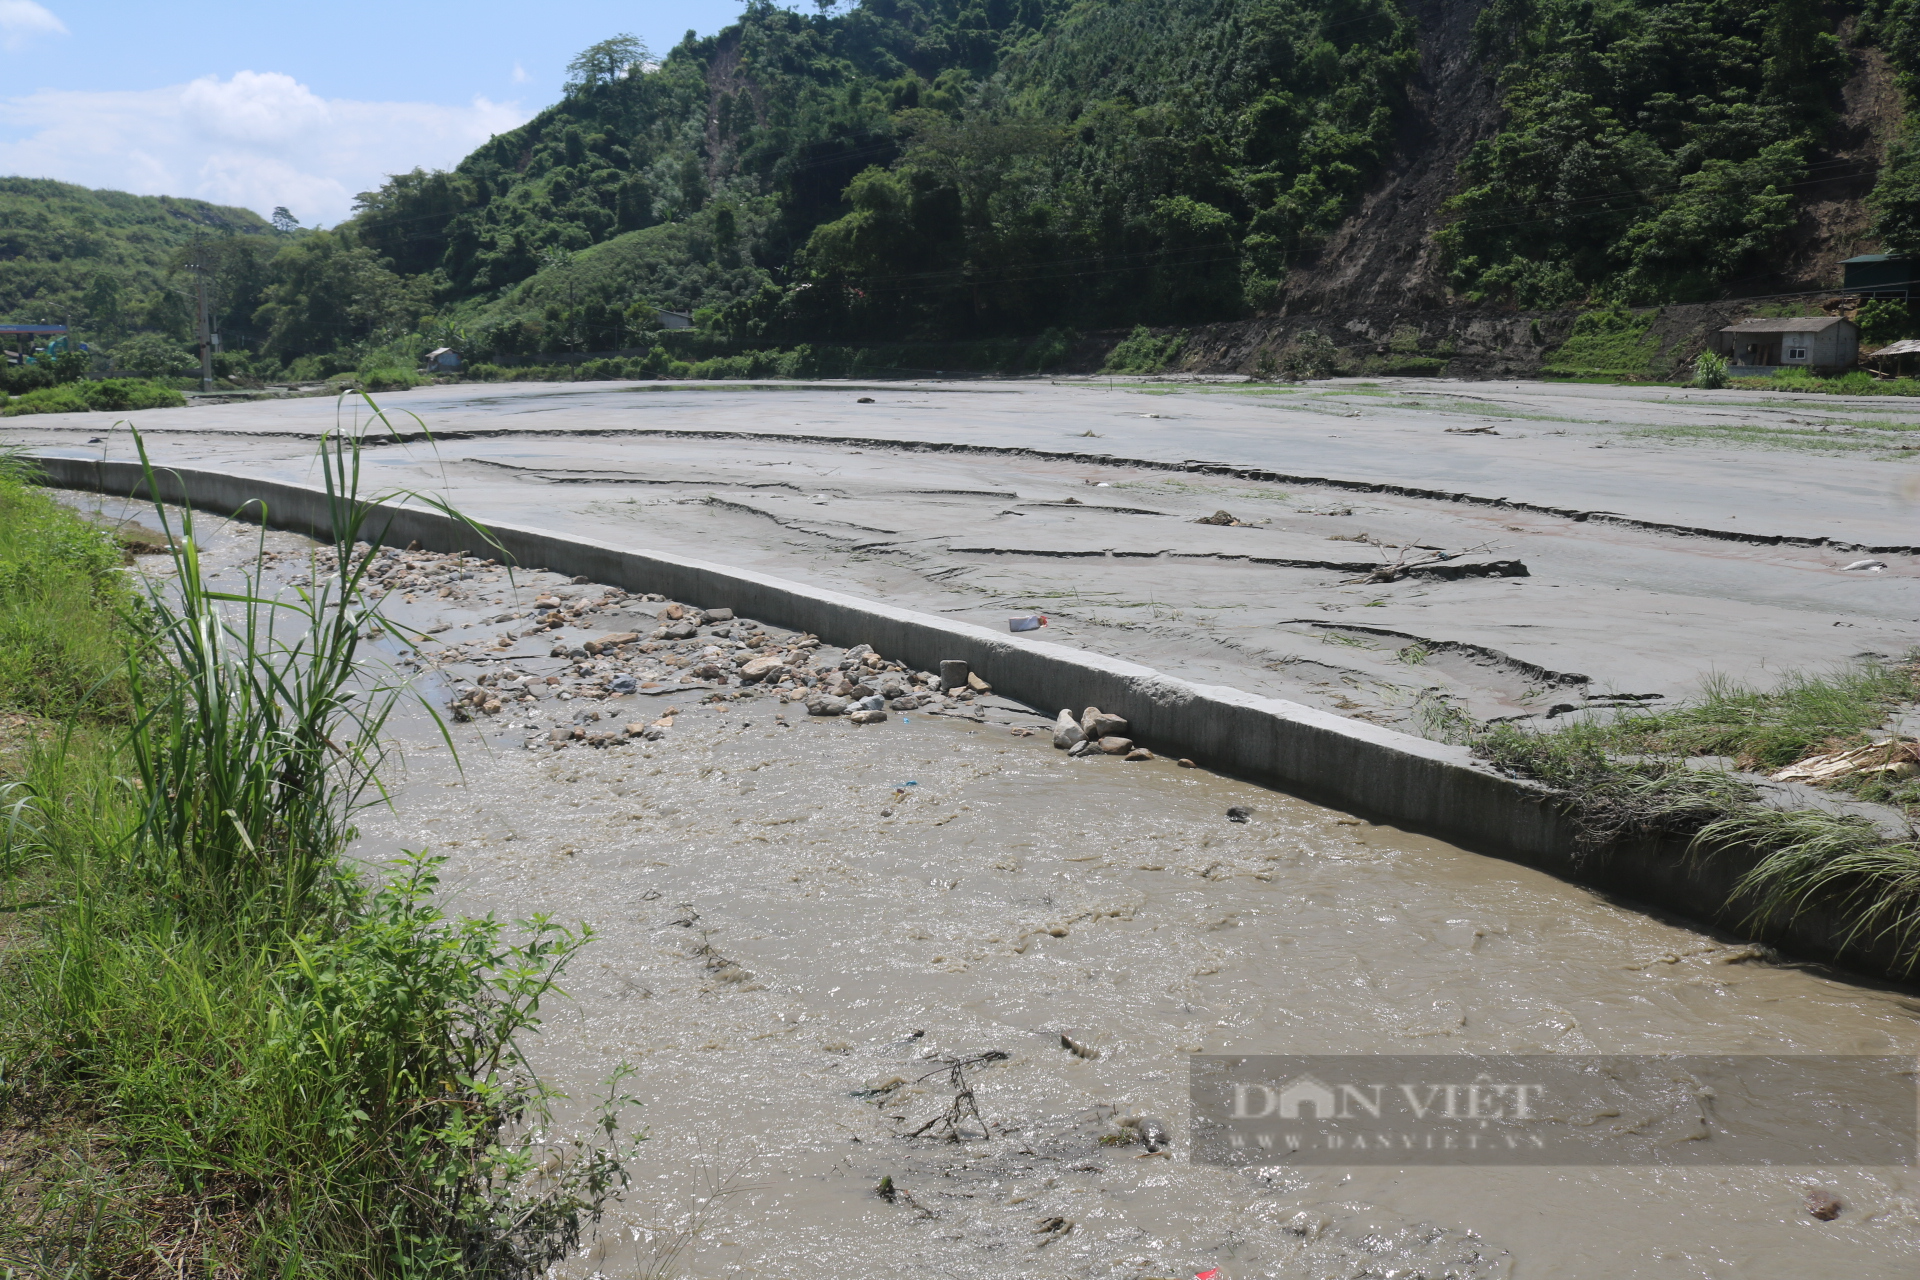 Nhiều tài sản của nông dân mất trắng do vỡ cống hồ thải quặng đuôi Nhà máy tuyển đồng Tả Phời ở Lào Cai - Ảnh 9.